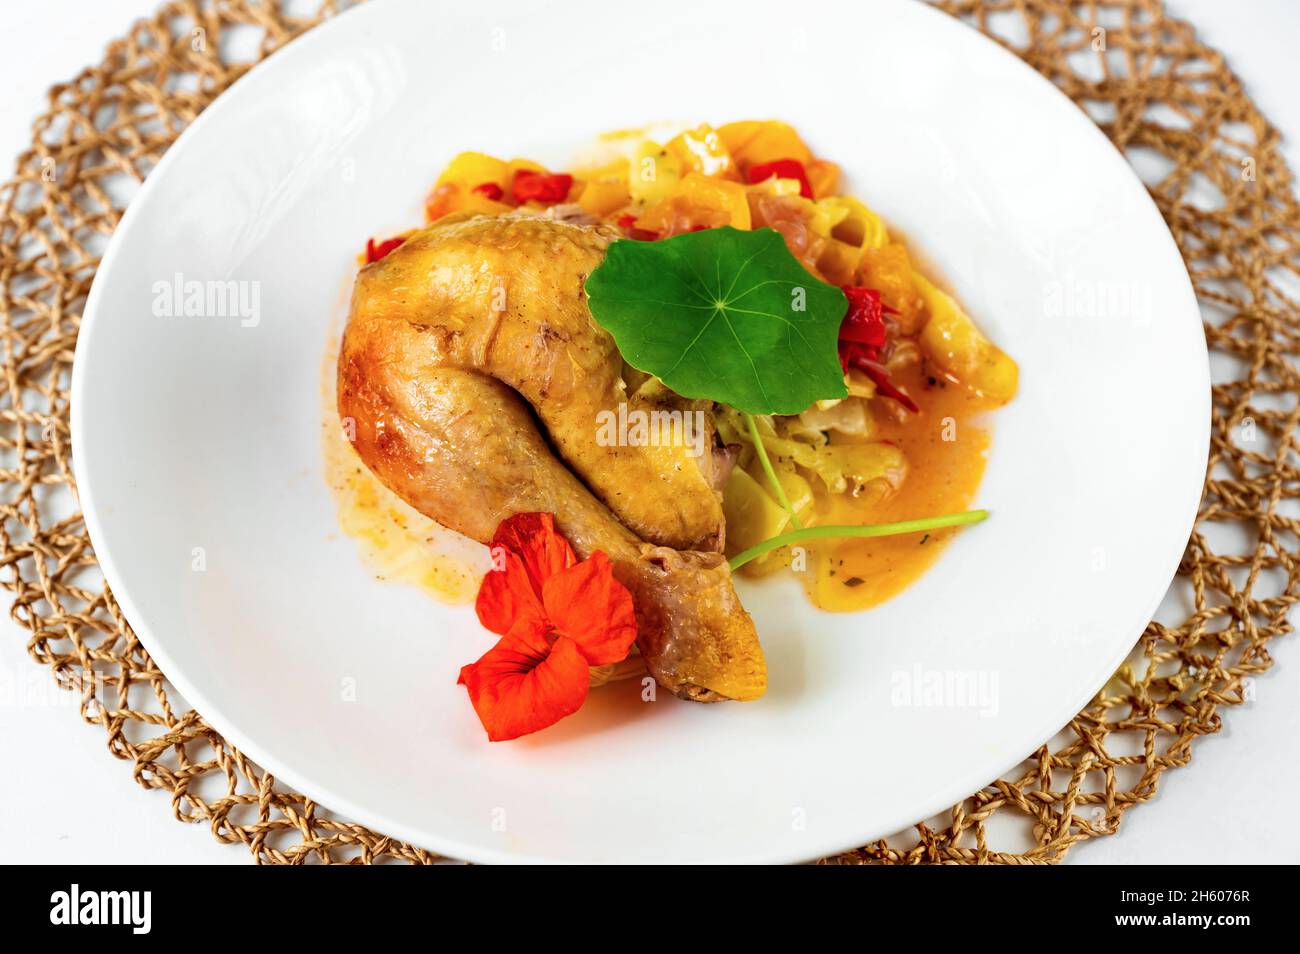 Muslo de pollo horneado sobre pimiento rojo y naranja con fideos, decorado con flores y hojas comestibles en plato blanco y almohadilla de bambú, closeup. Foto de stock